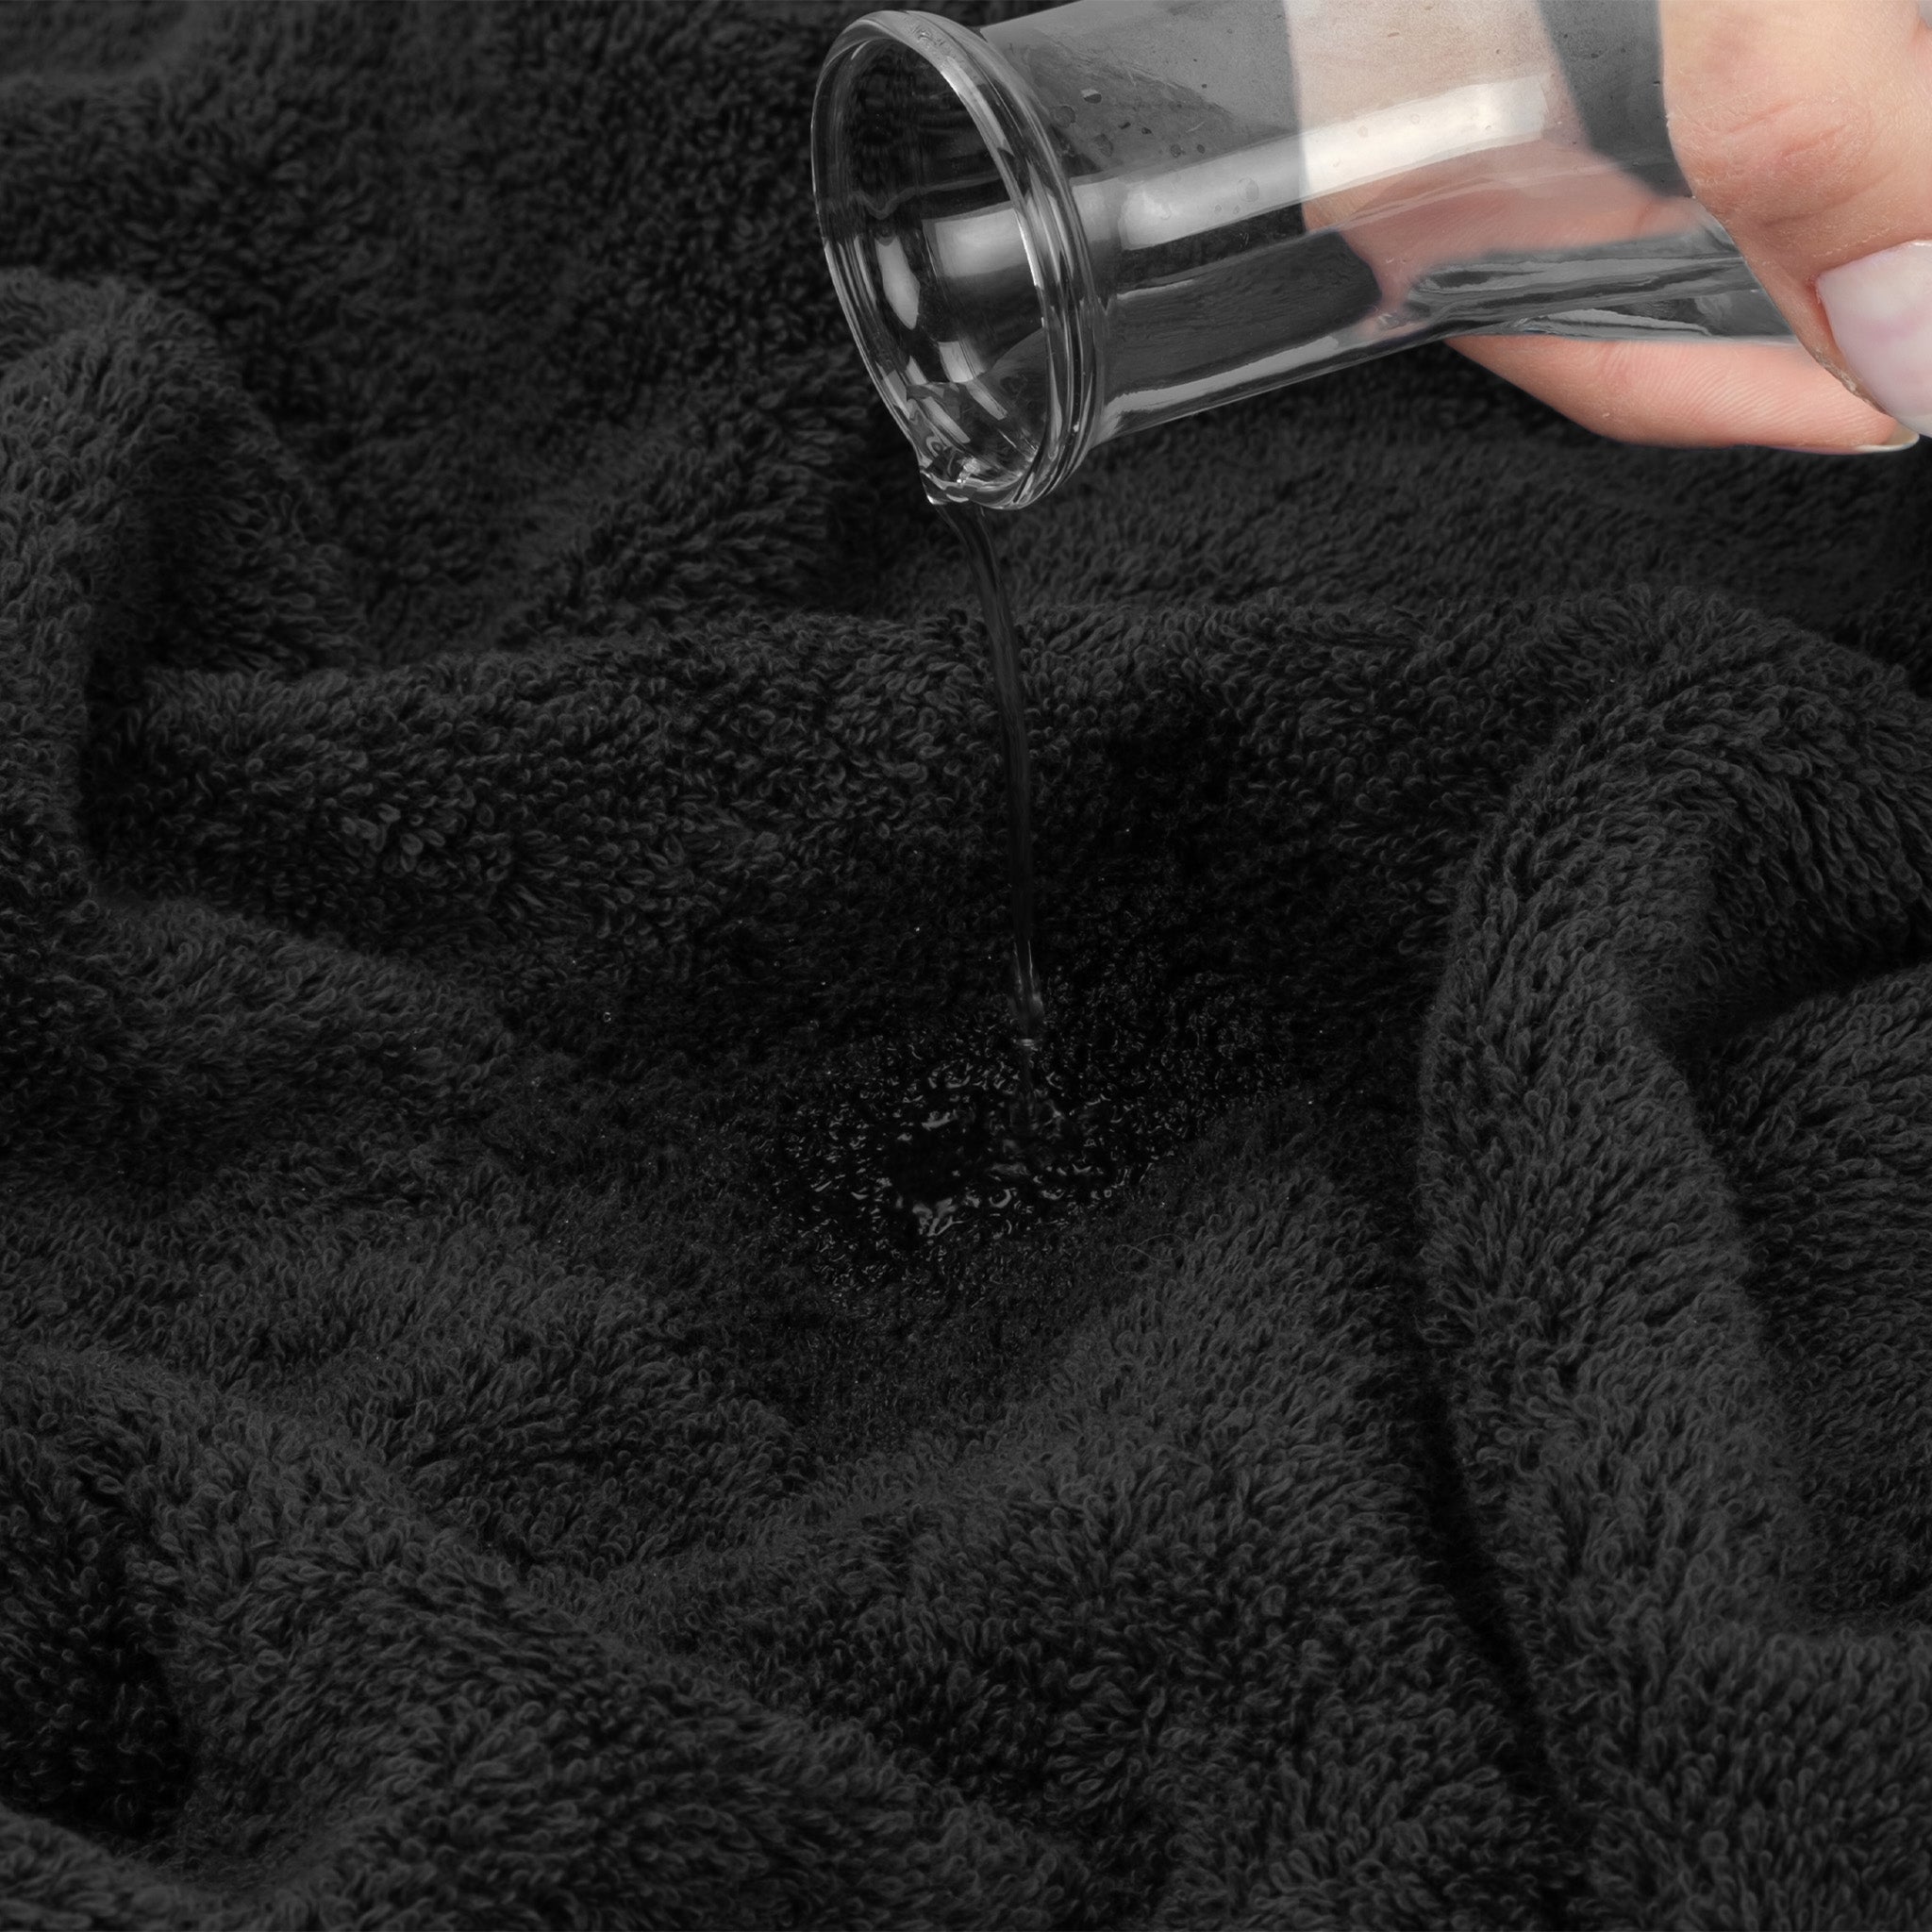 American Soft Linen 100% Turkish Cotton 6 Piece Towel Set Wholesale black-6